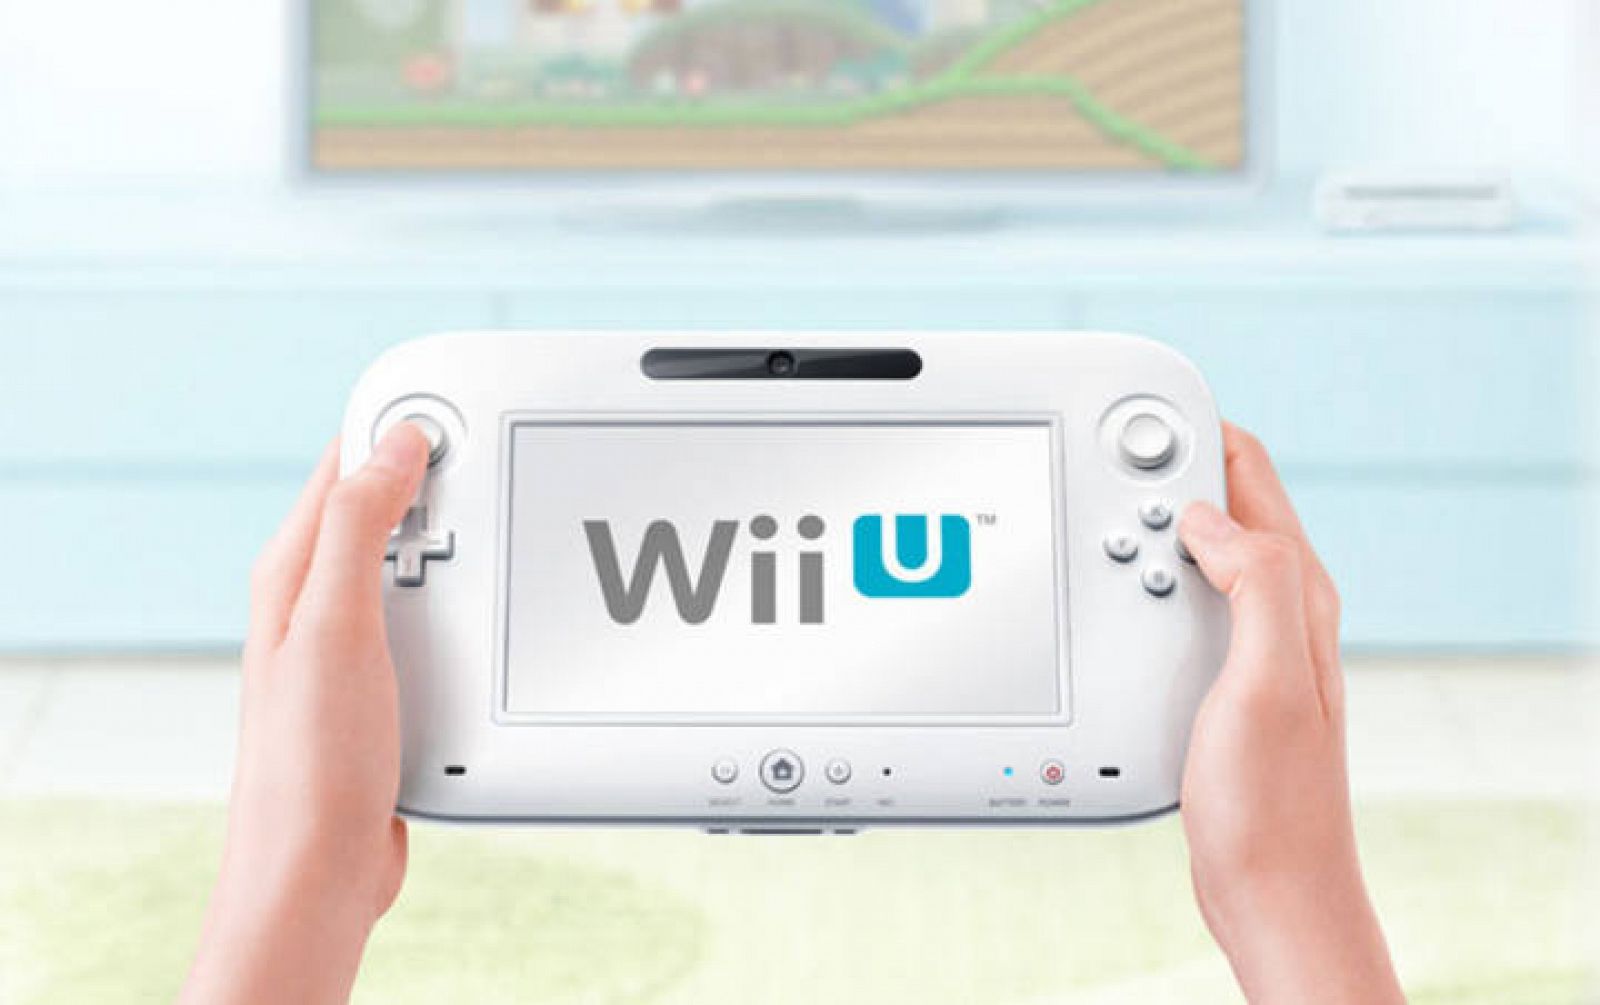 Refinería Óptima Barry Nintendo Wii U saldrá a la venta en España el 30 de noviembre - RTVE.es